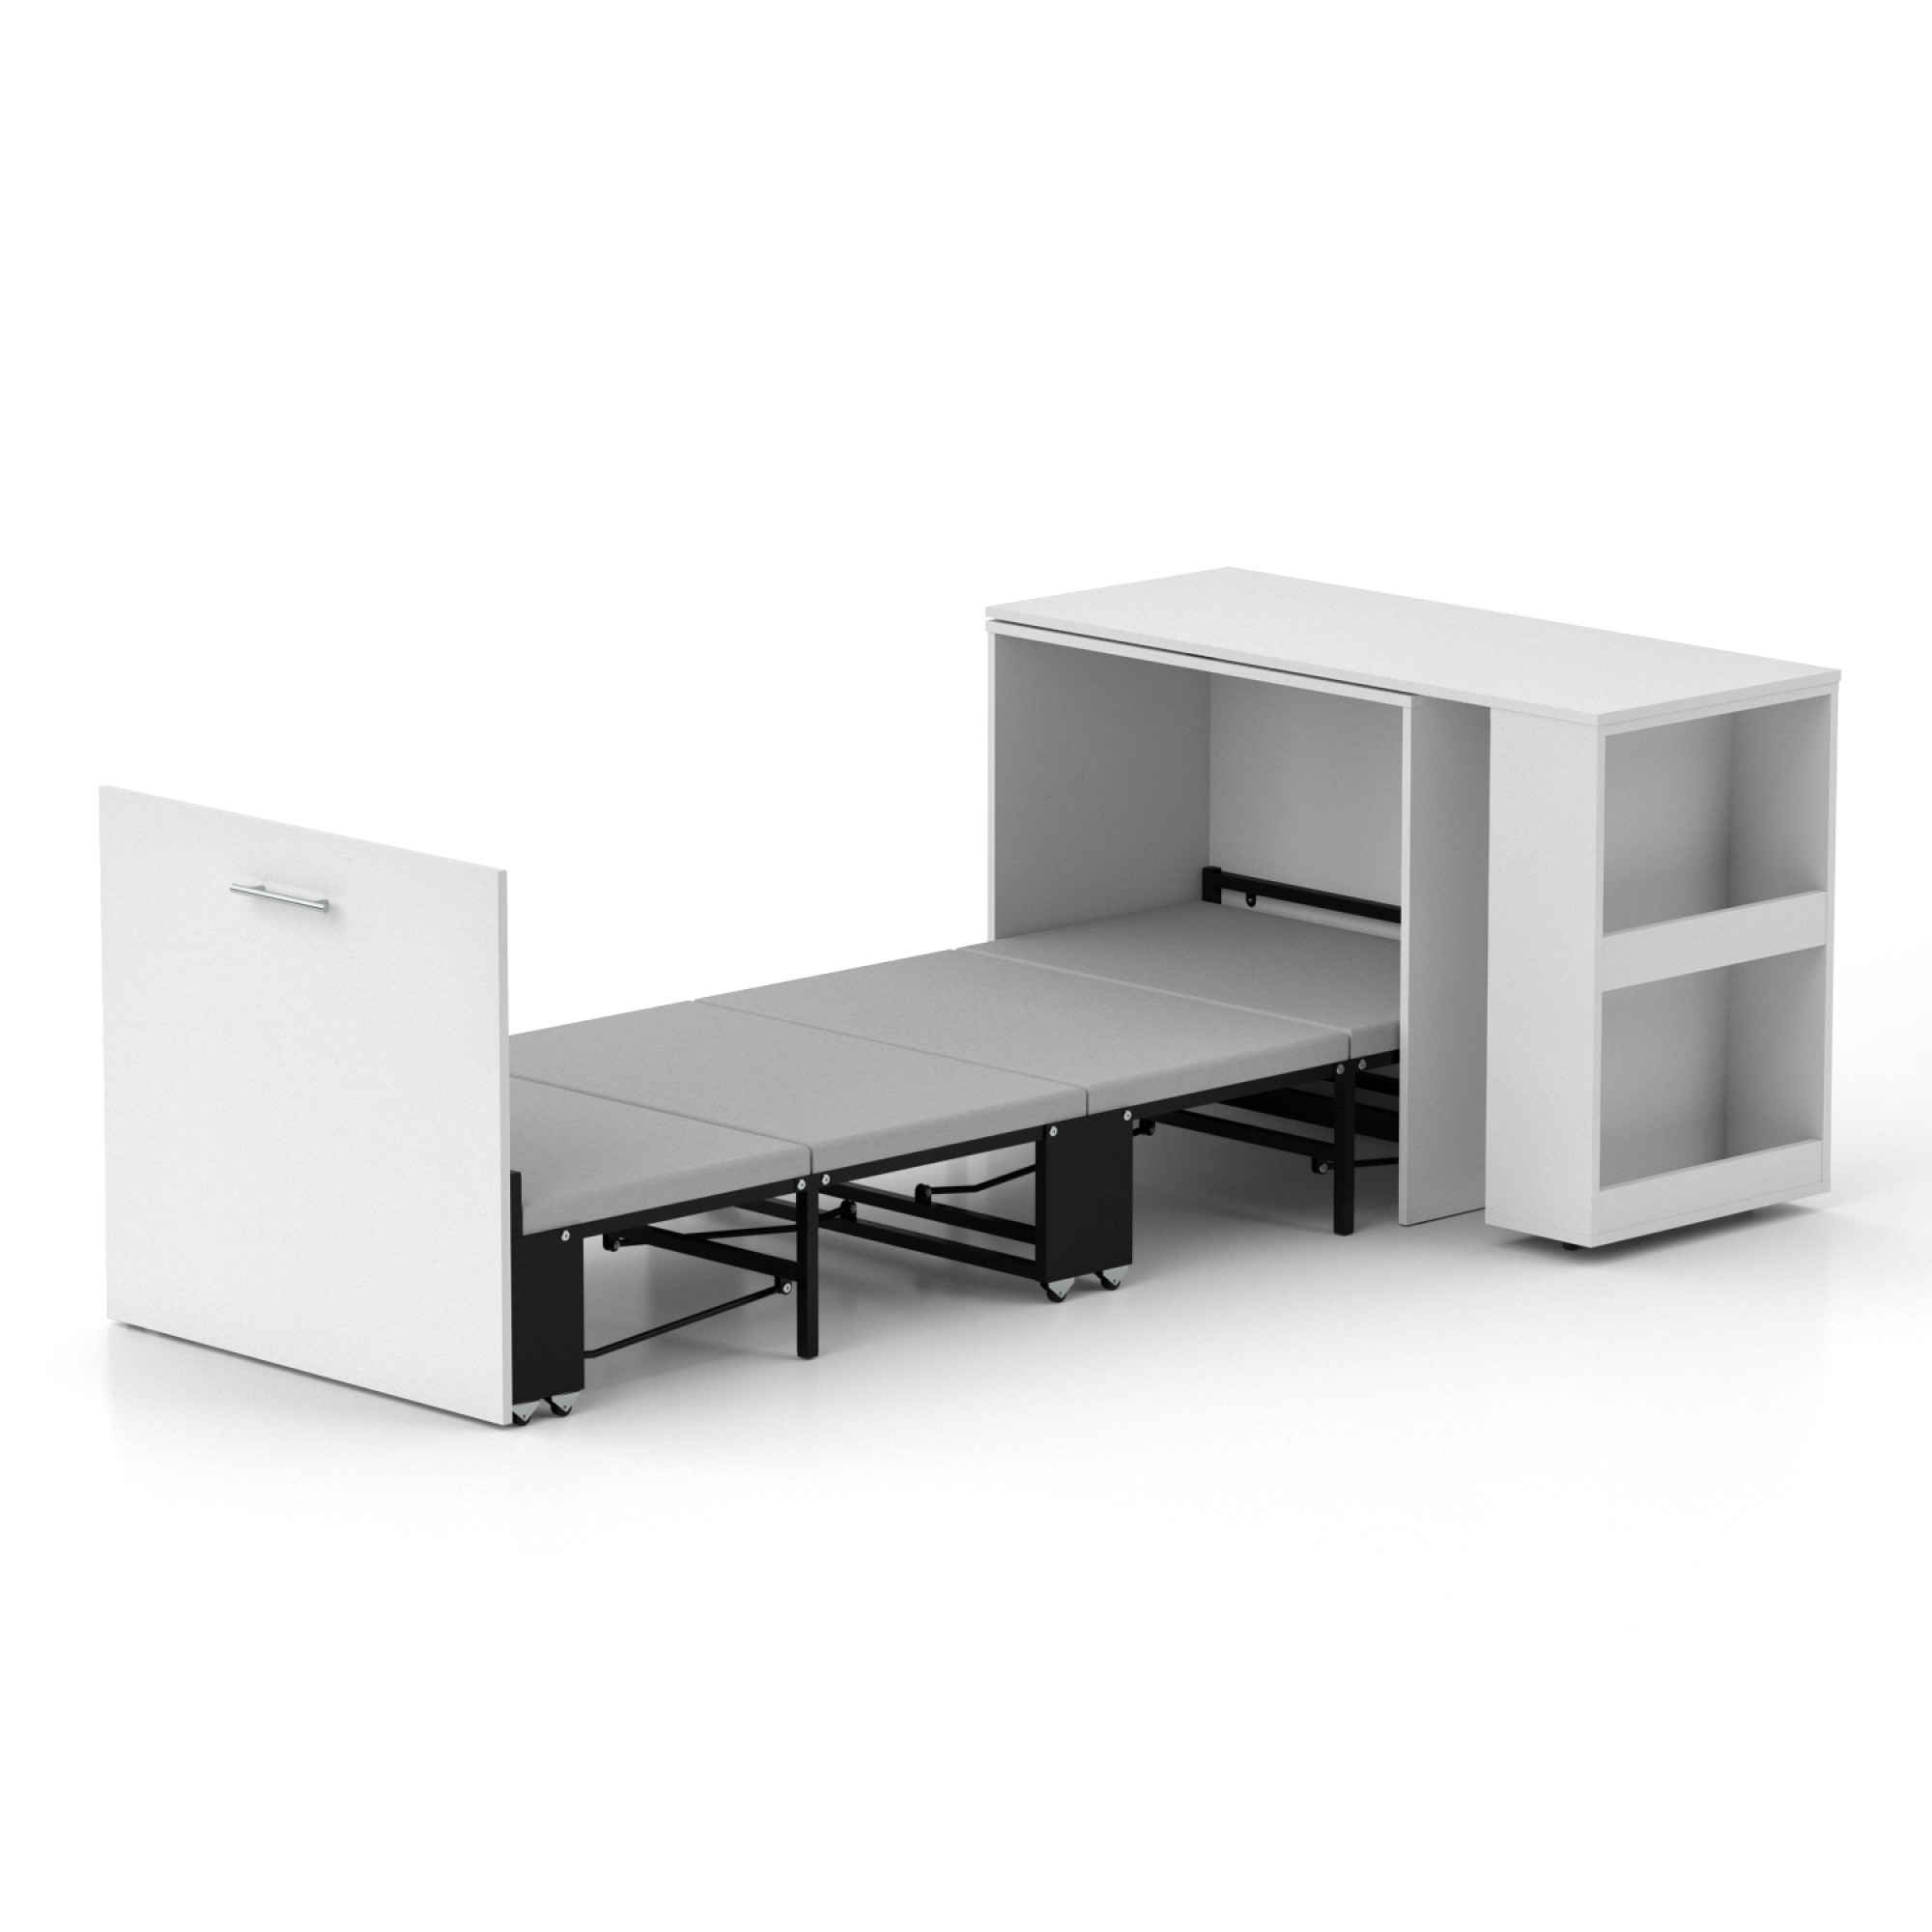 Ліжко-трансформер + Письмовий стіл + Тумба + Комод Sirim-C1 (4 в 1) / (Білий)